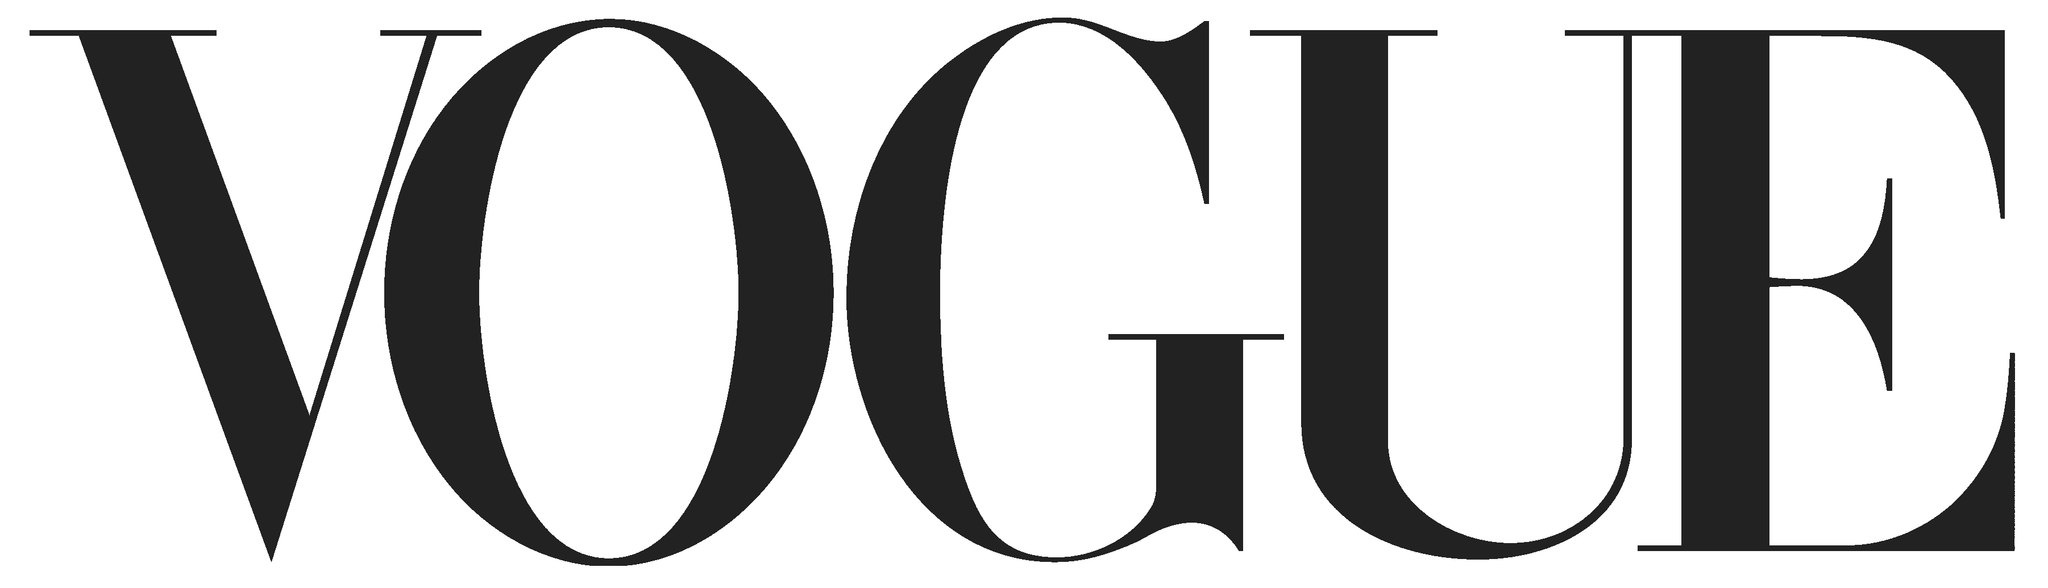 Vogue logo best vitamin c serums